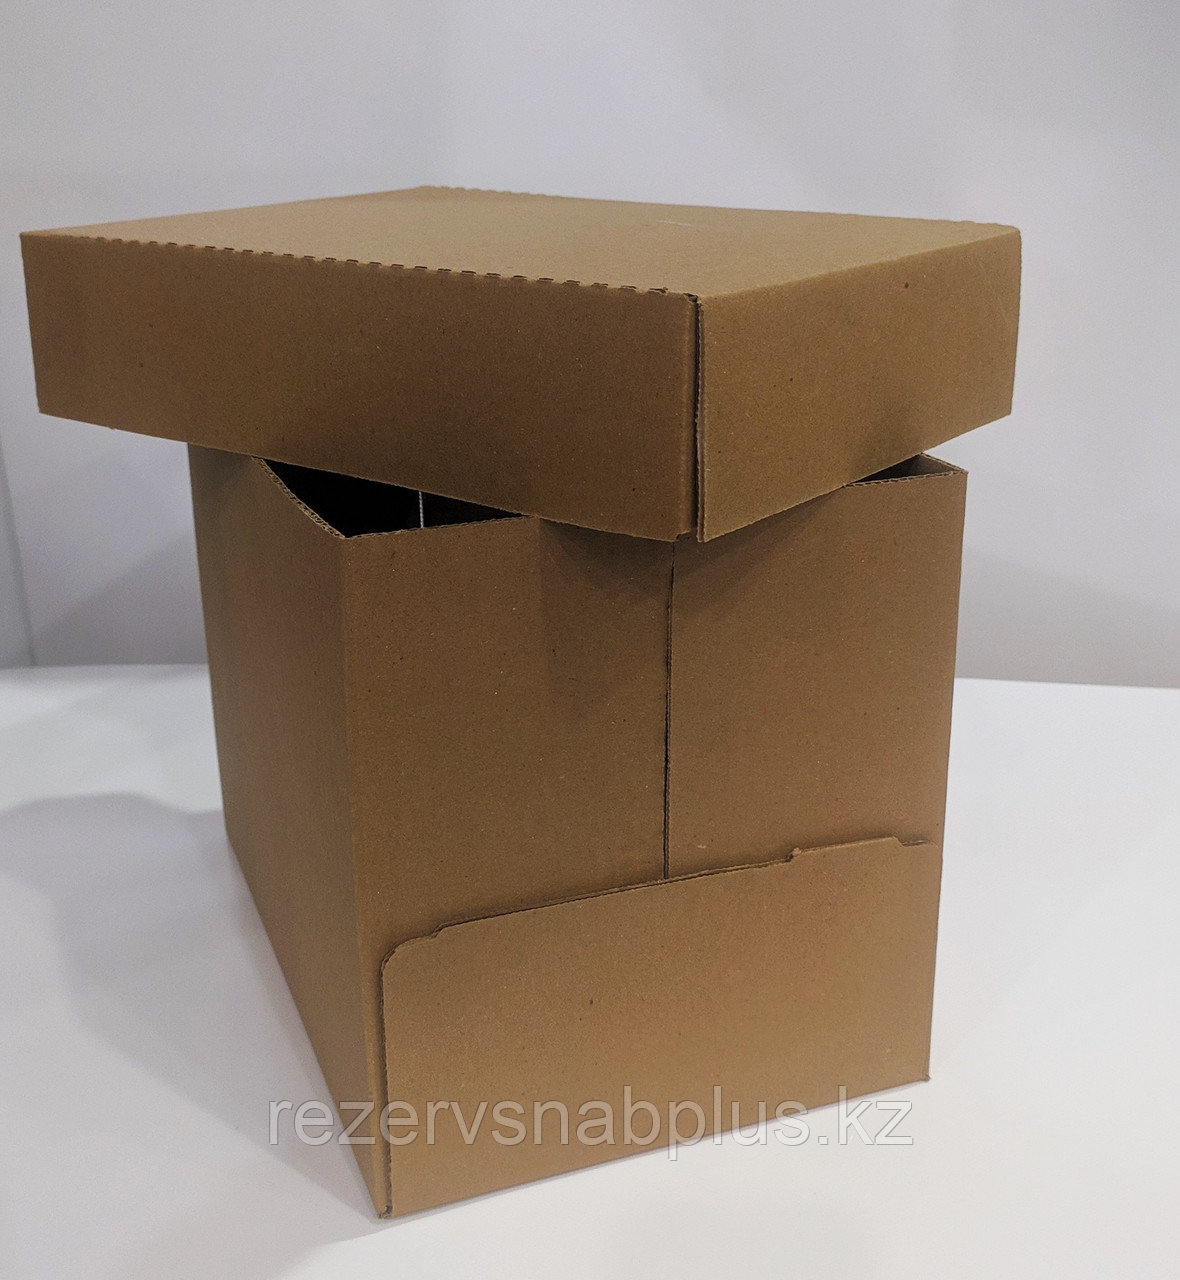 Коробки гофро А4, аналог коробок для офисных бумаг, фото 1